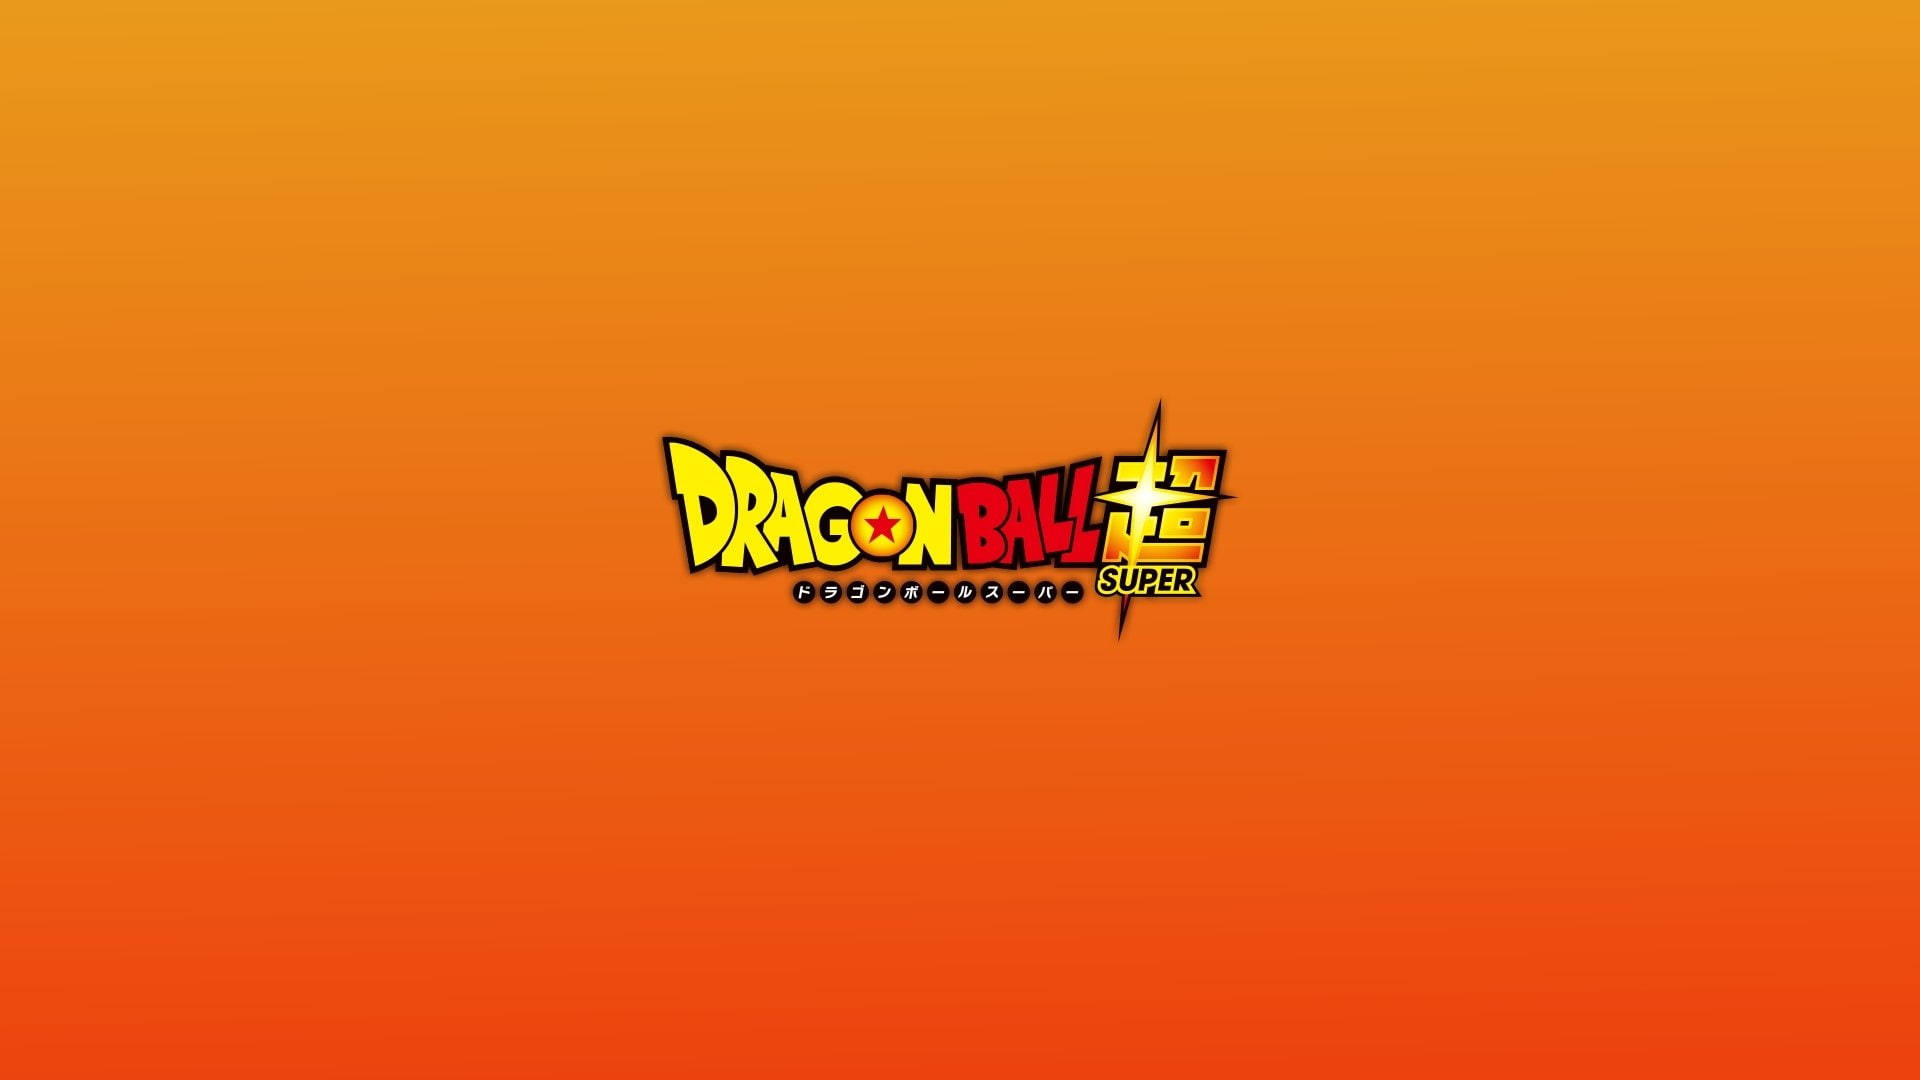 4 Ways to Draw Dragon Ball Z - wikiHow